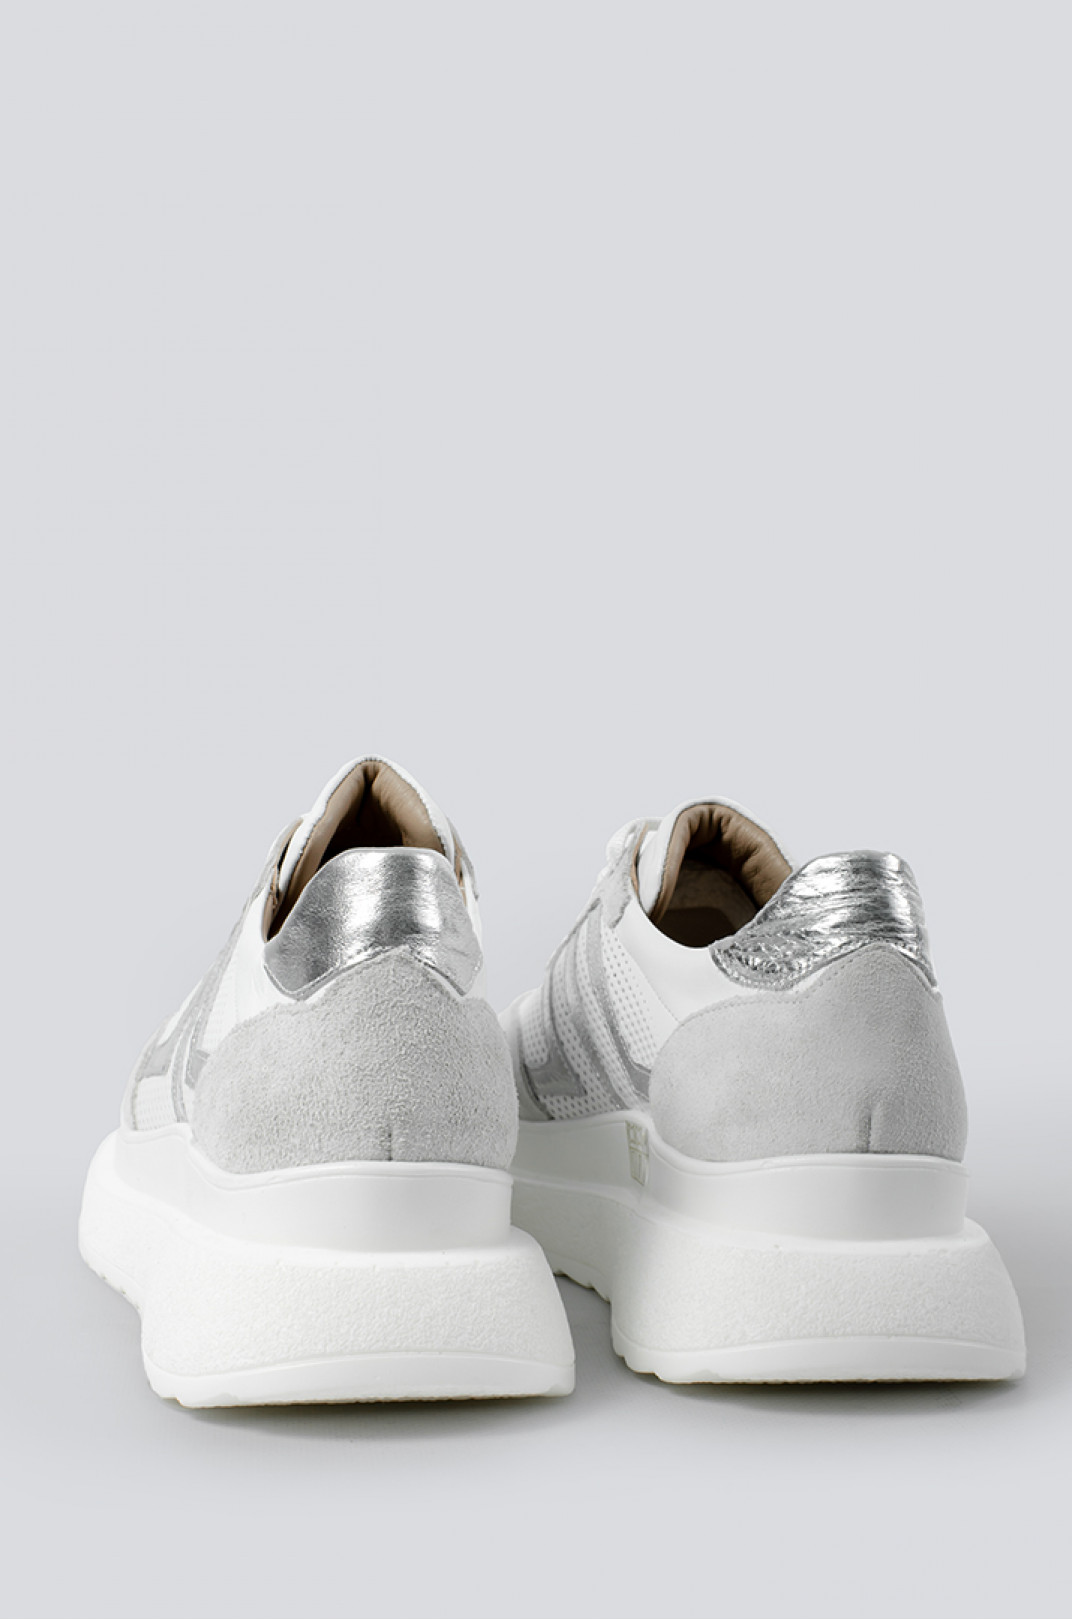 Кросівки білі зі сріблом великих розмірів